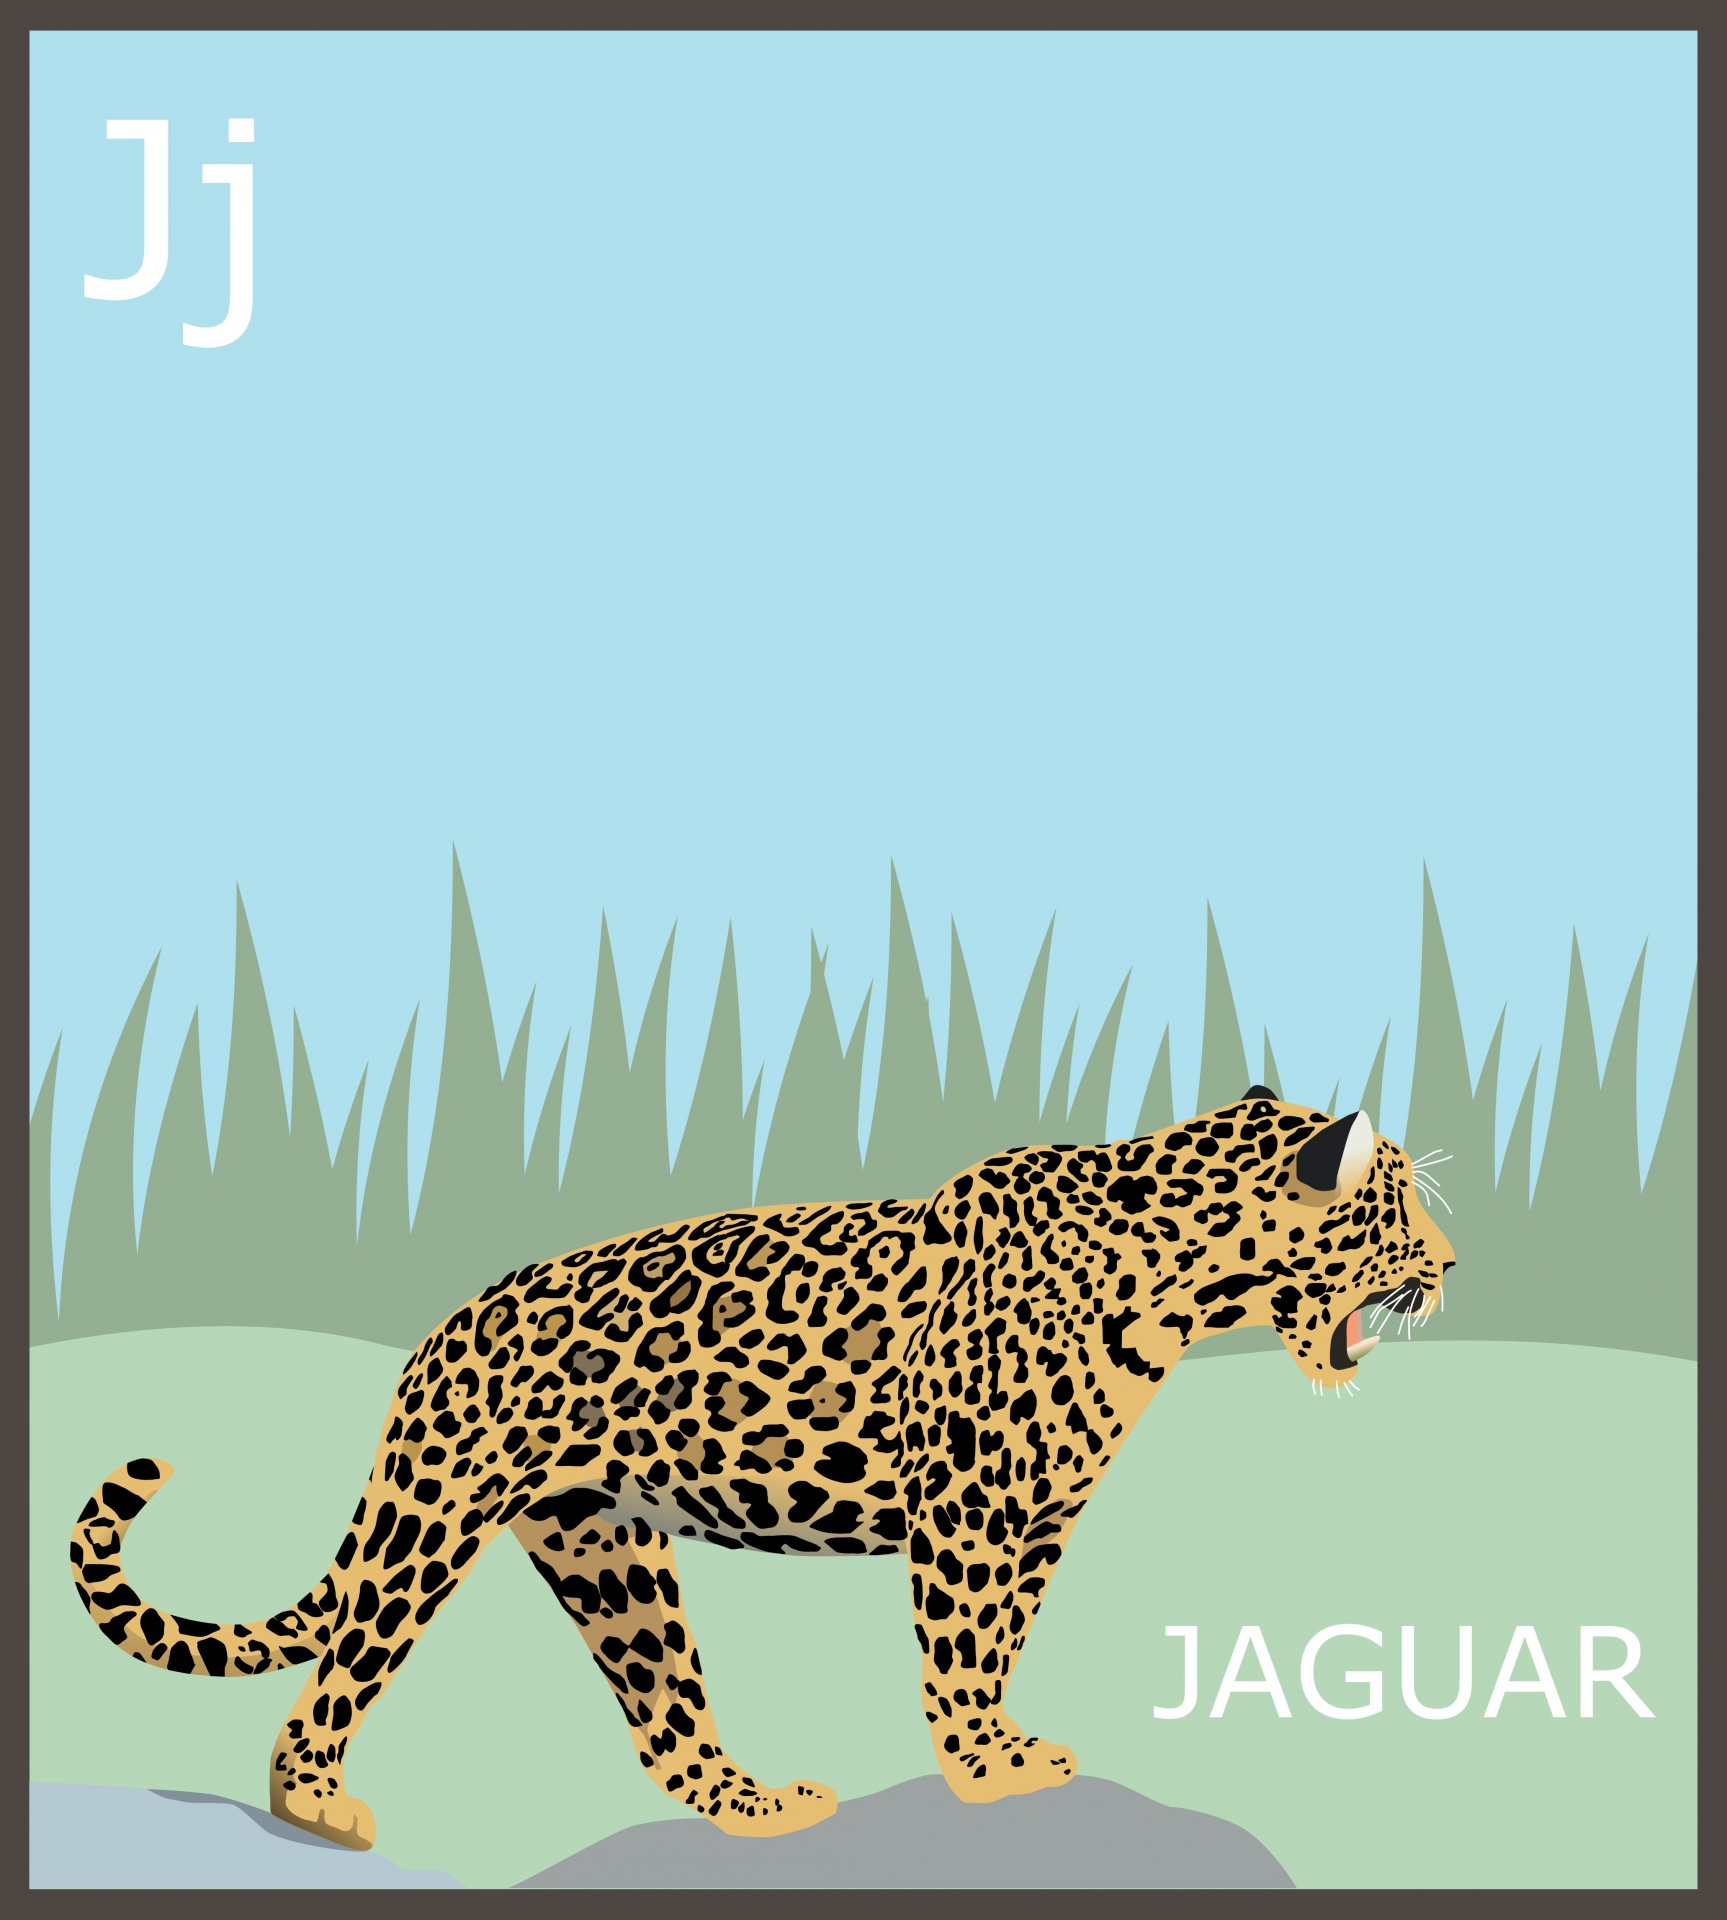 Letter J for jaguar, animal alphabet for kids, flash card, educational, learning, abc, art illustration